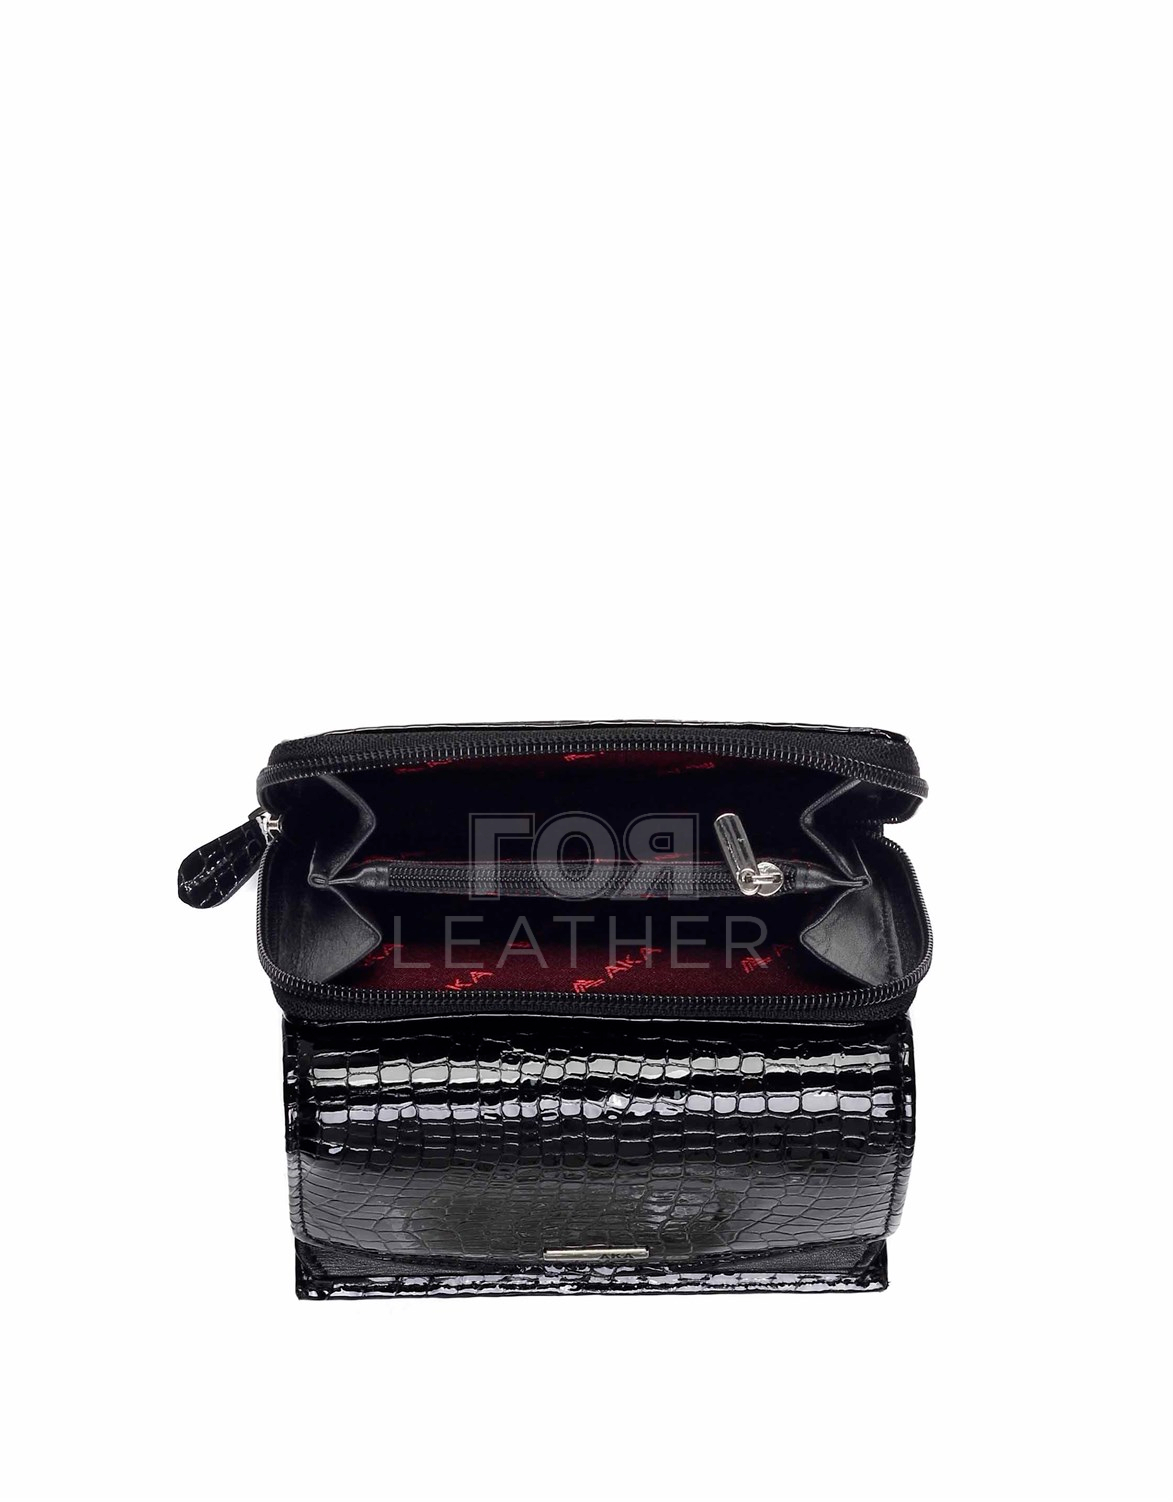 Дамски кожен портфейл модел- 442 Продуктът е ръчно изработен от 100% естествена телешка кожа и не съдържа никакви вредни за здравето активни вещества. Нов луксозен модел дамски портфейл от ГОЯ Leather.